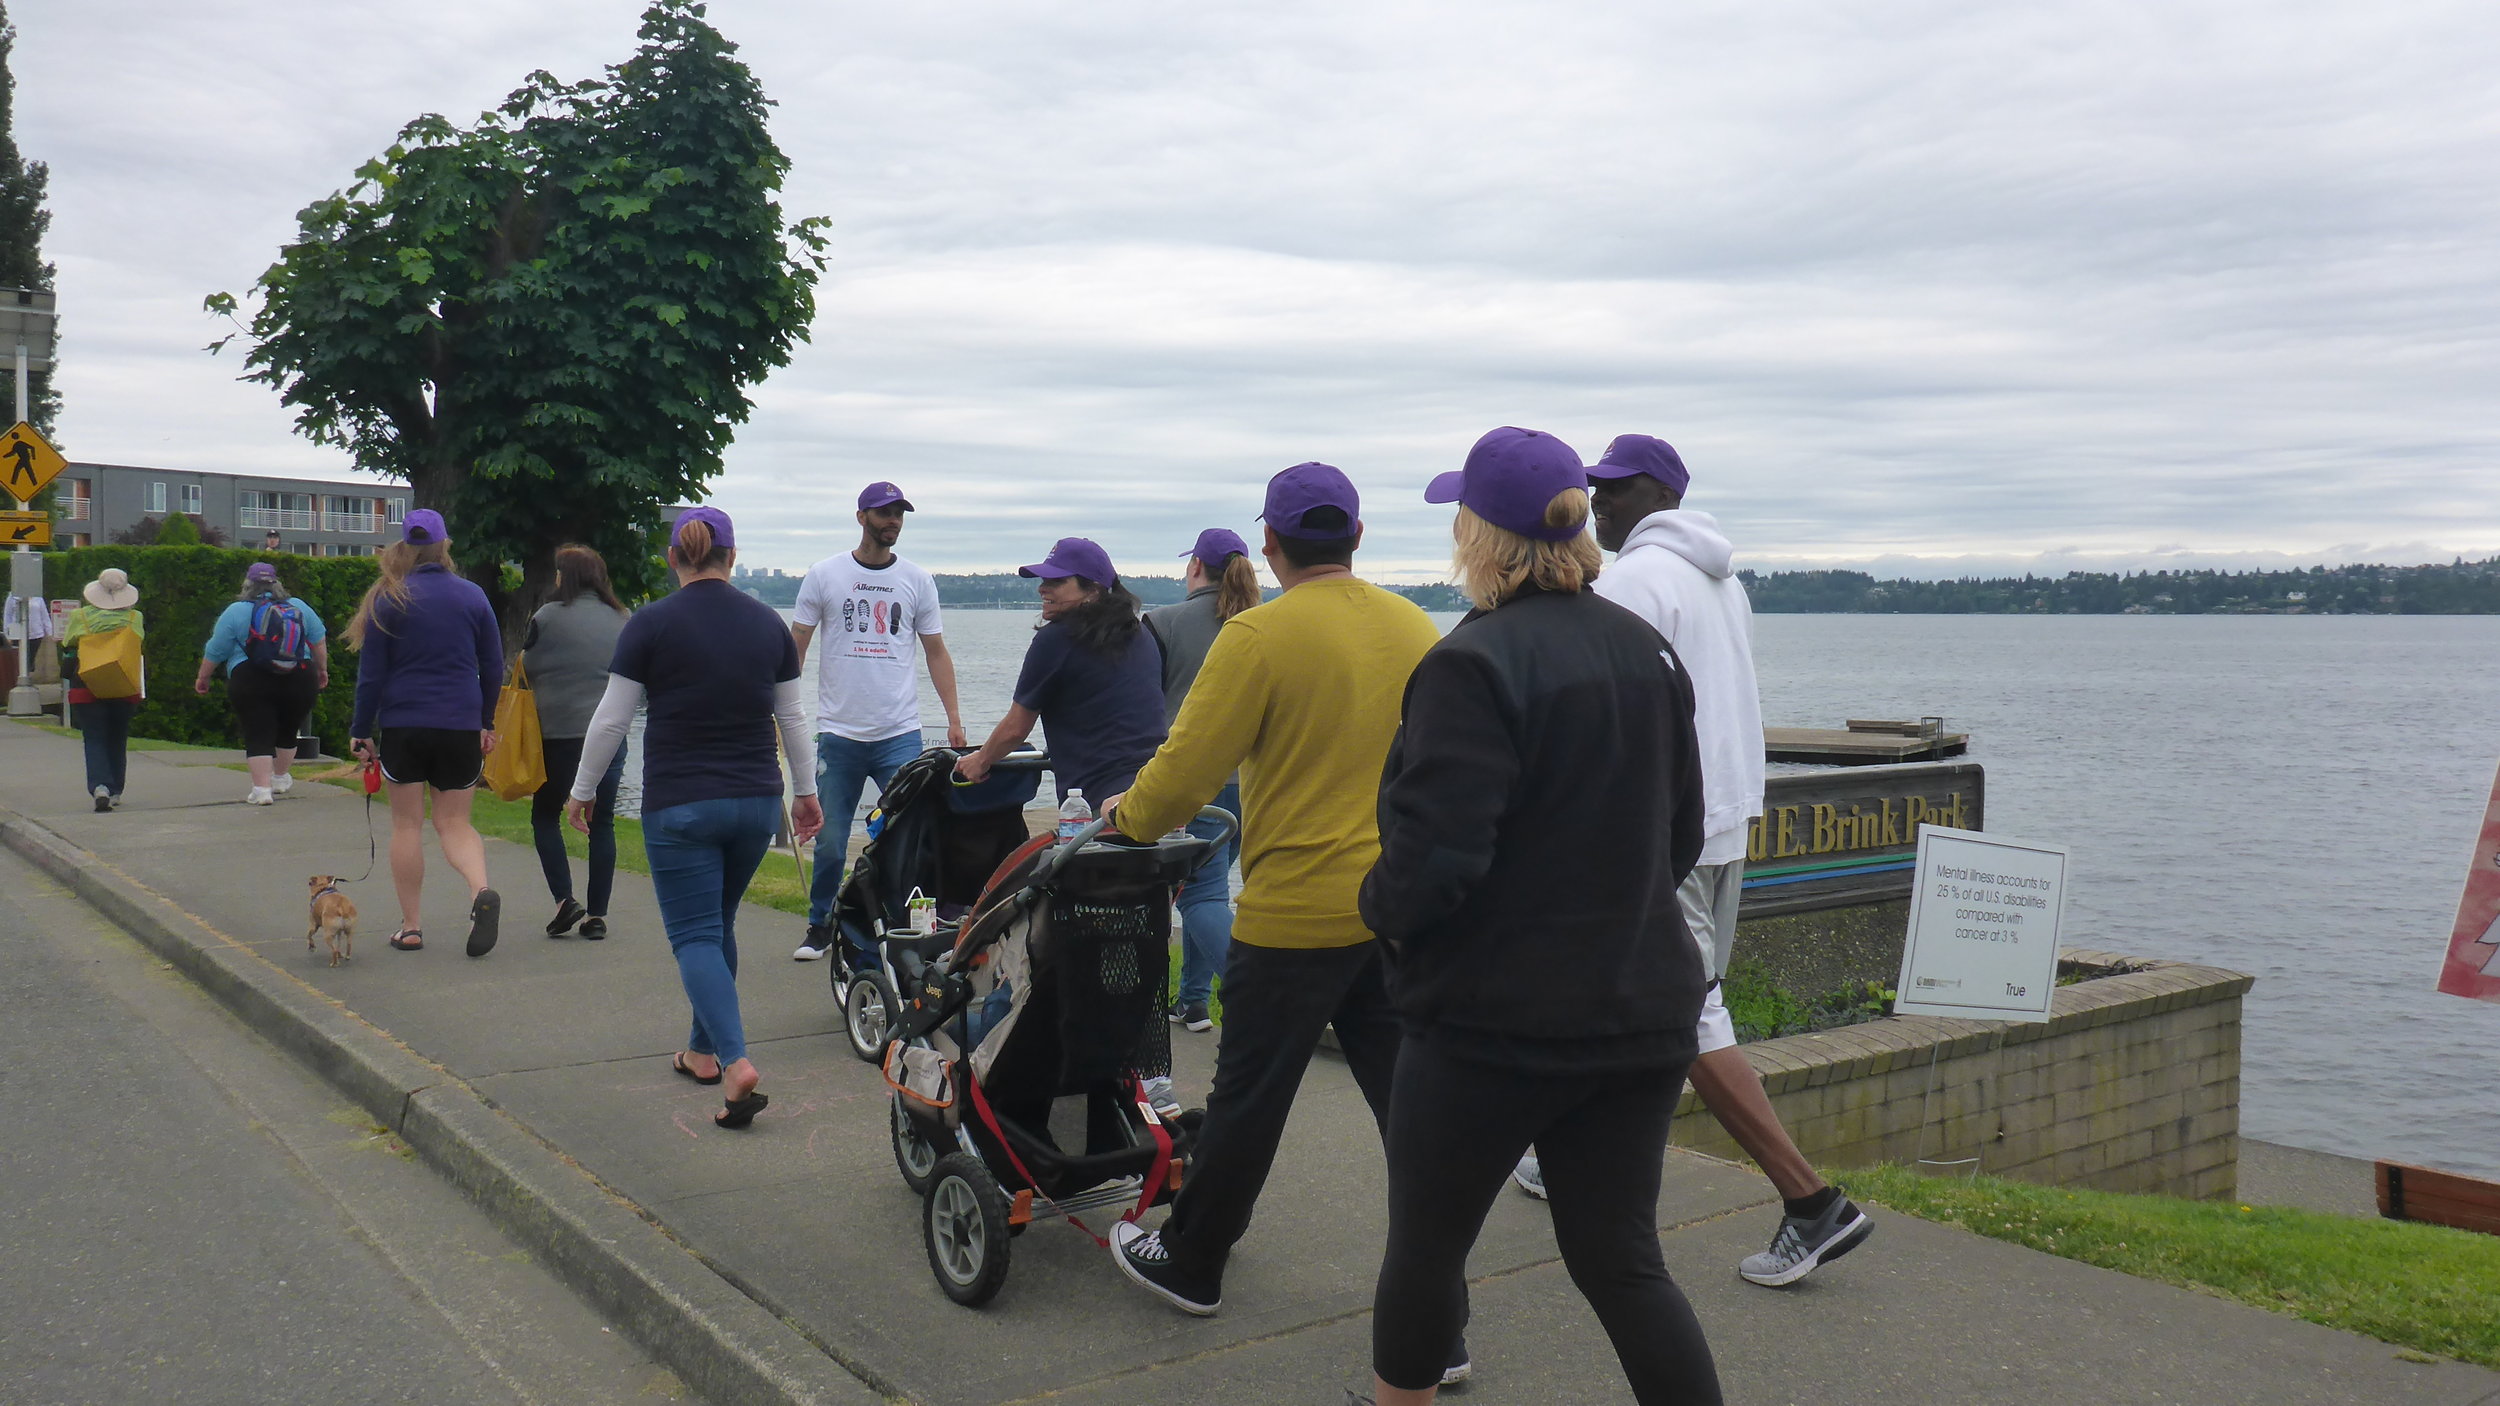 13 Purple hats walking.JPG